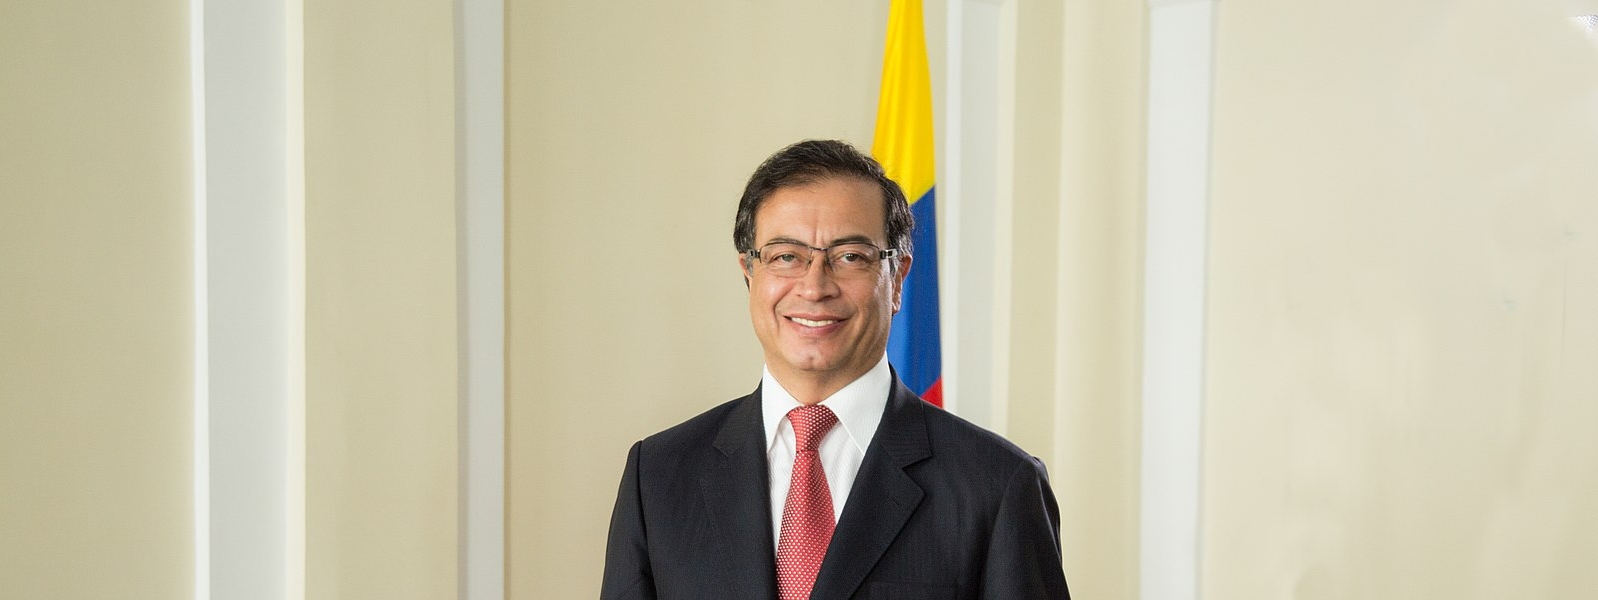 Gustavo Petro Wins Colombian Presidency